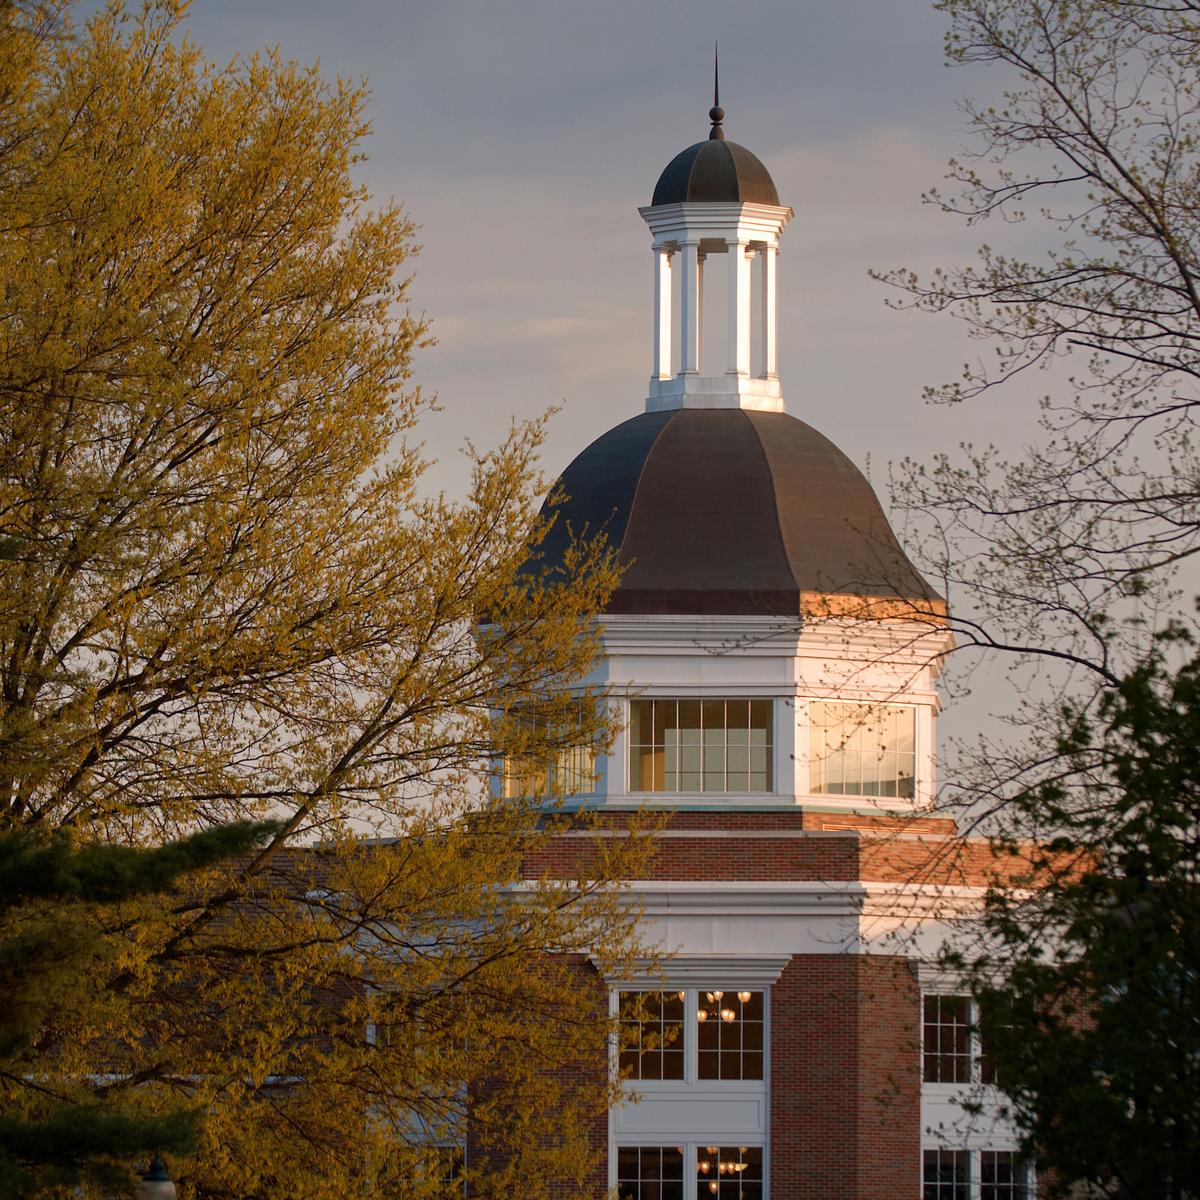 Baker University Center, front view